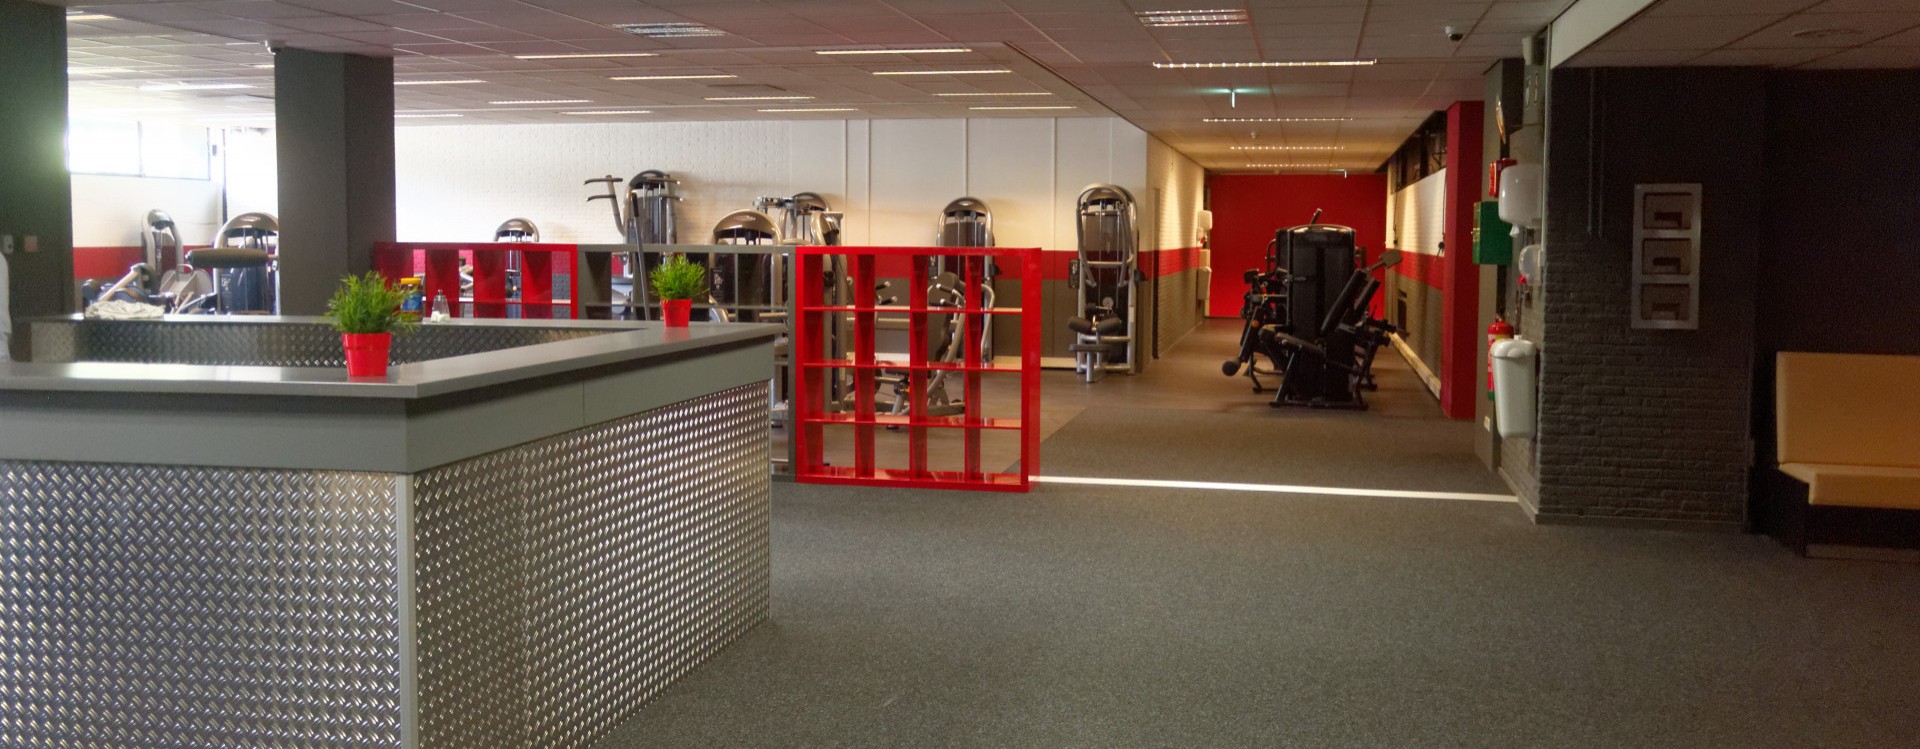 Fitness centrum Ron Haans Groningen